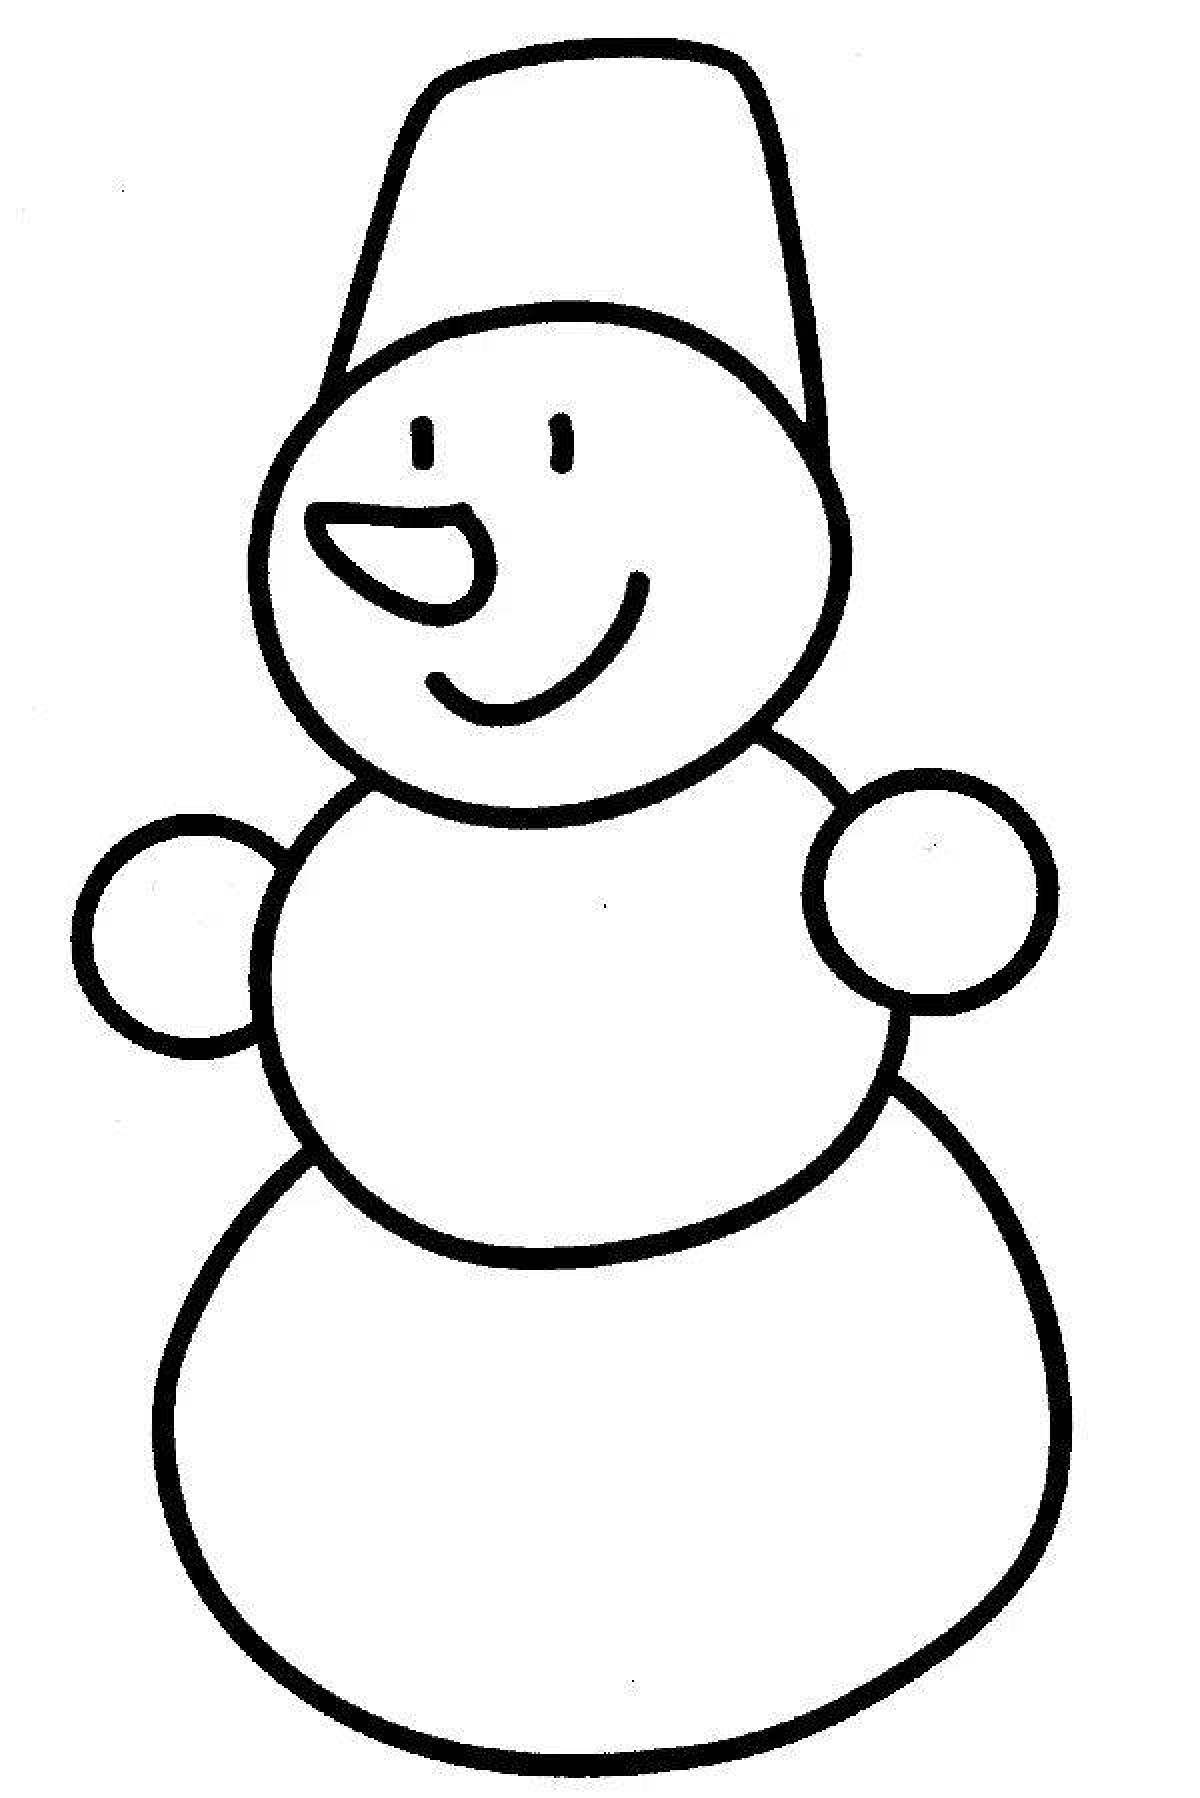 Snowman pattern #2